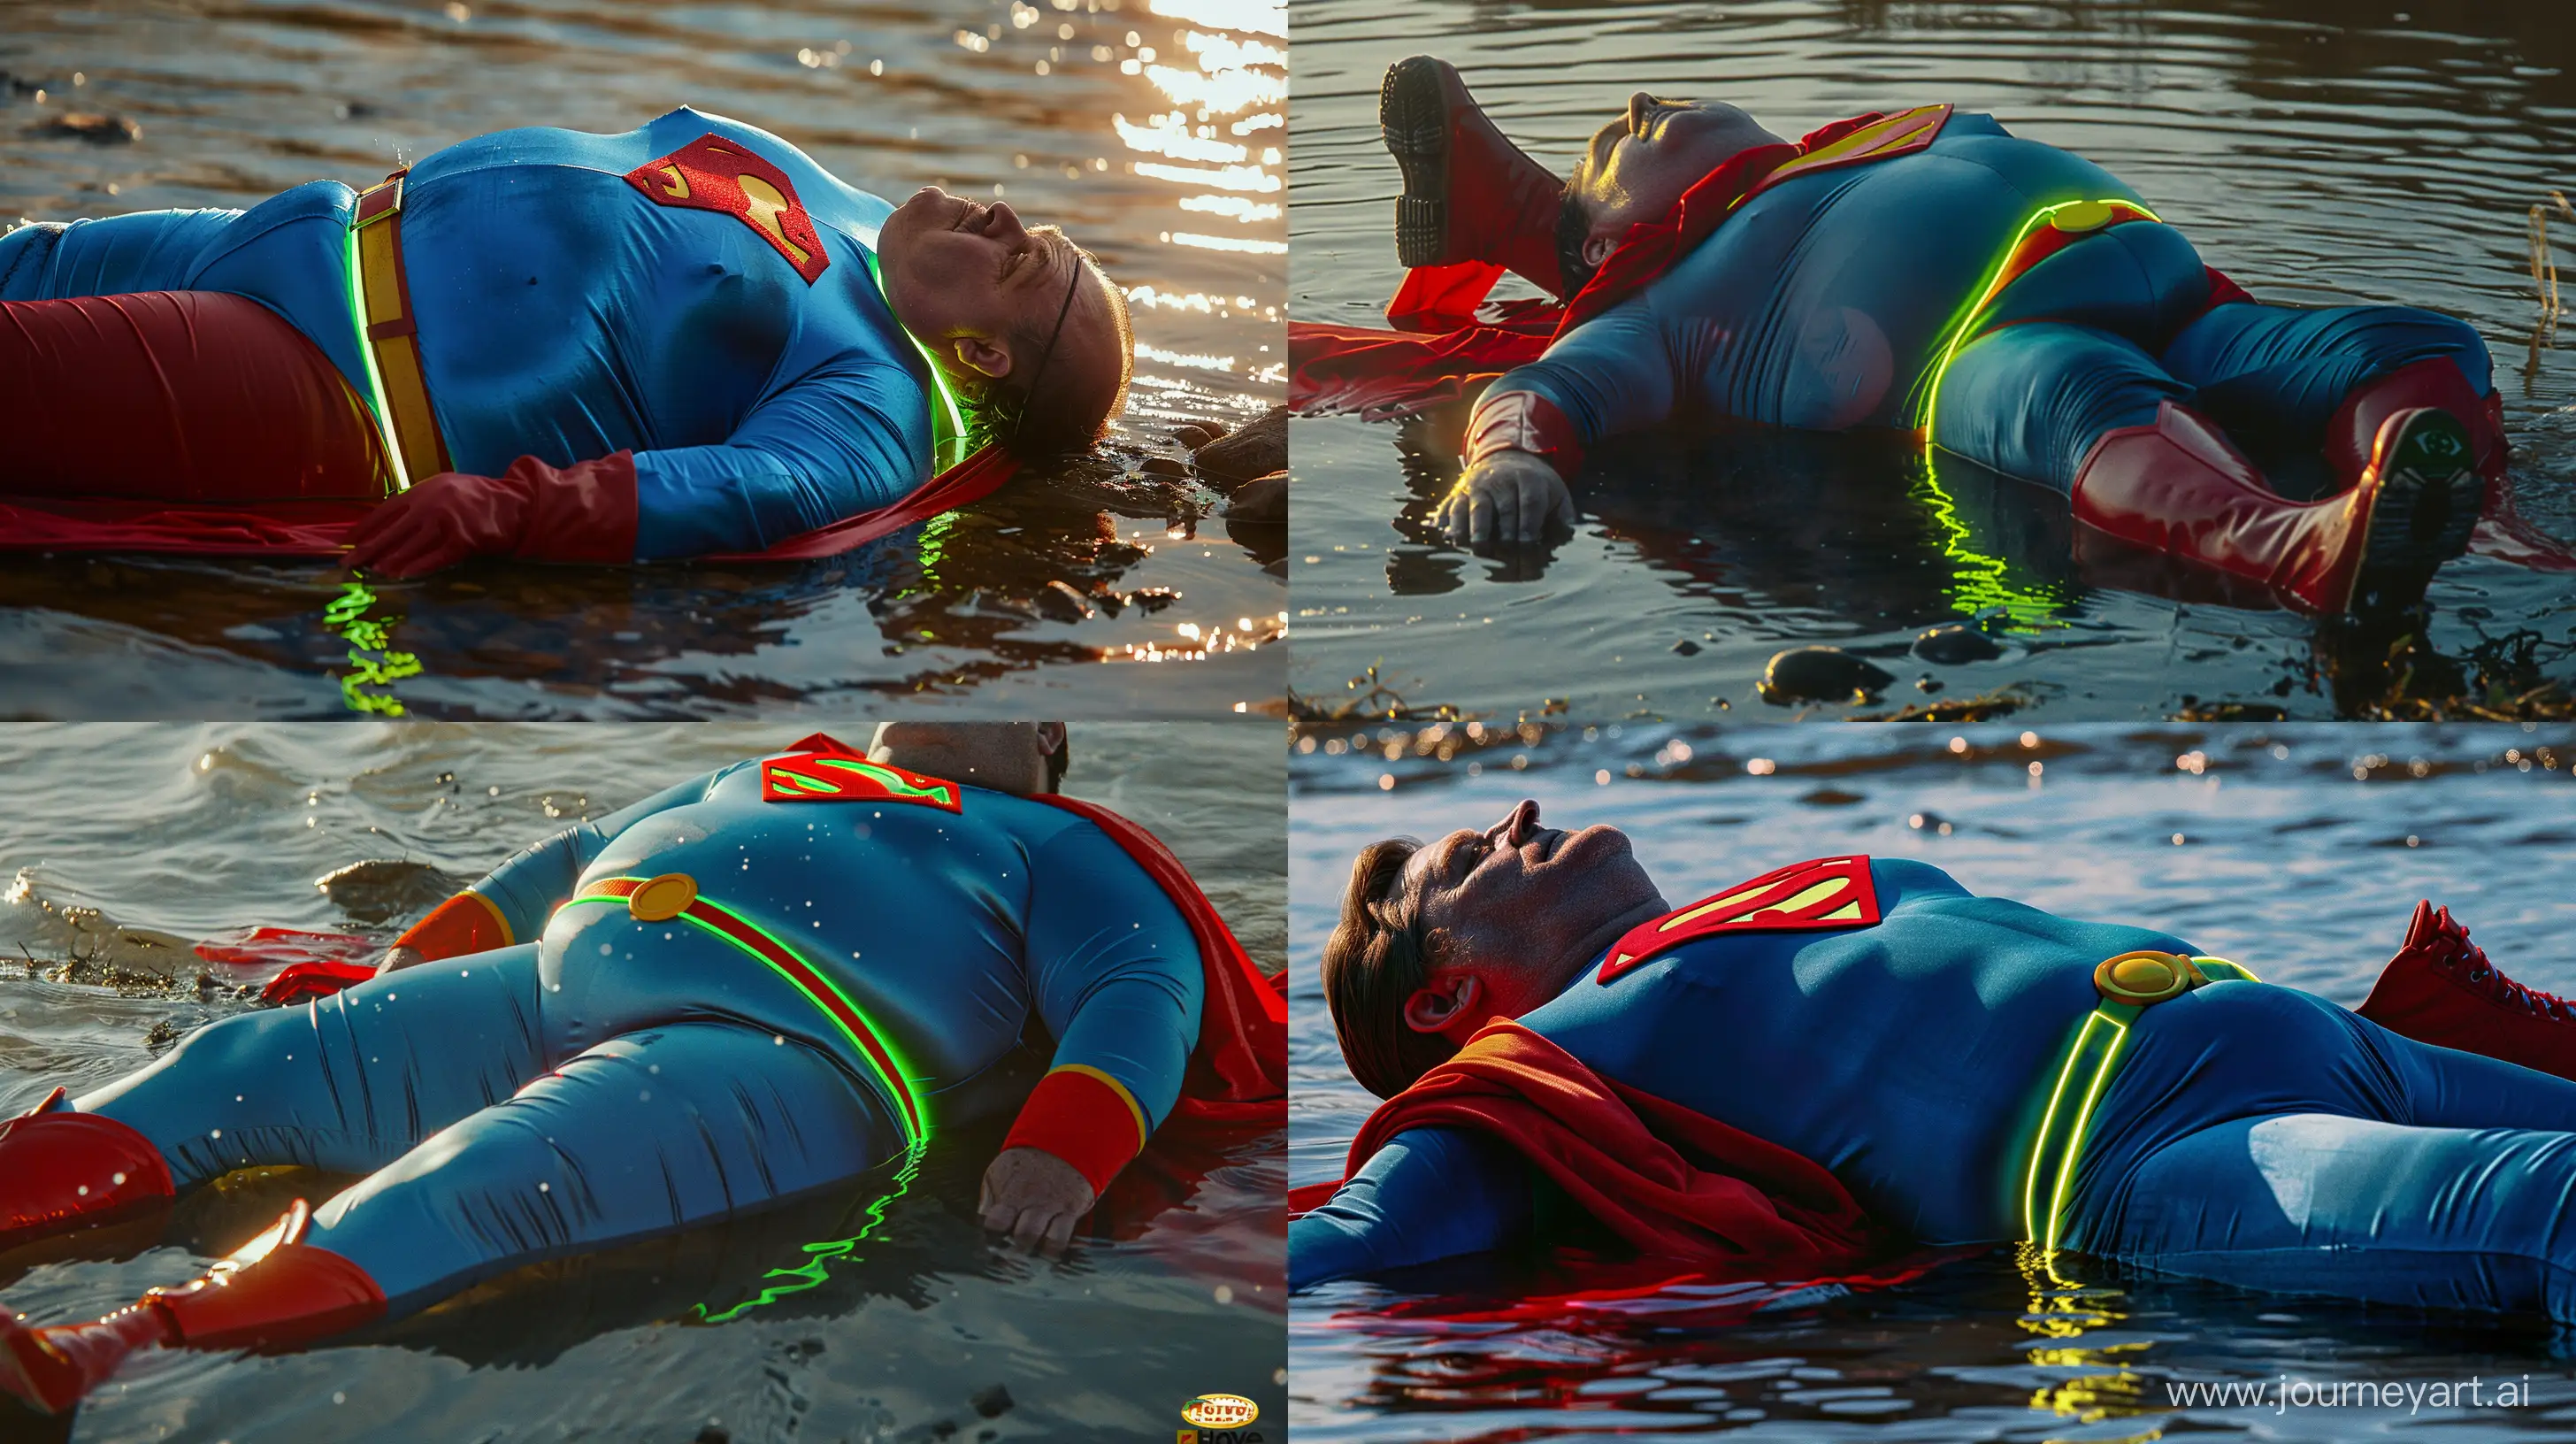 Elderly-Superman-Enjoys-Serene-River-Bath-in-Vibrant-Neon-Costume